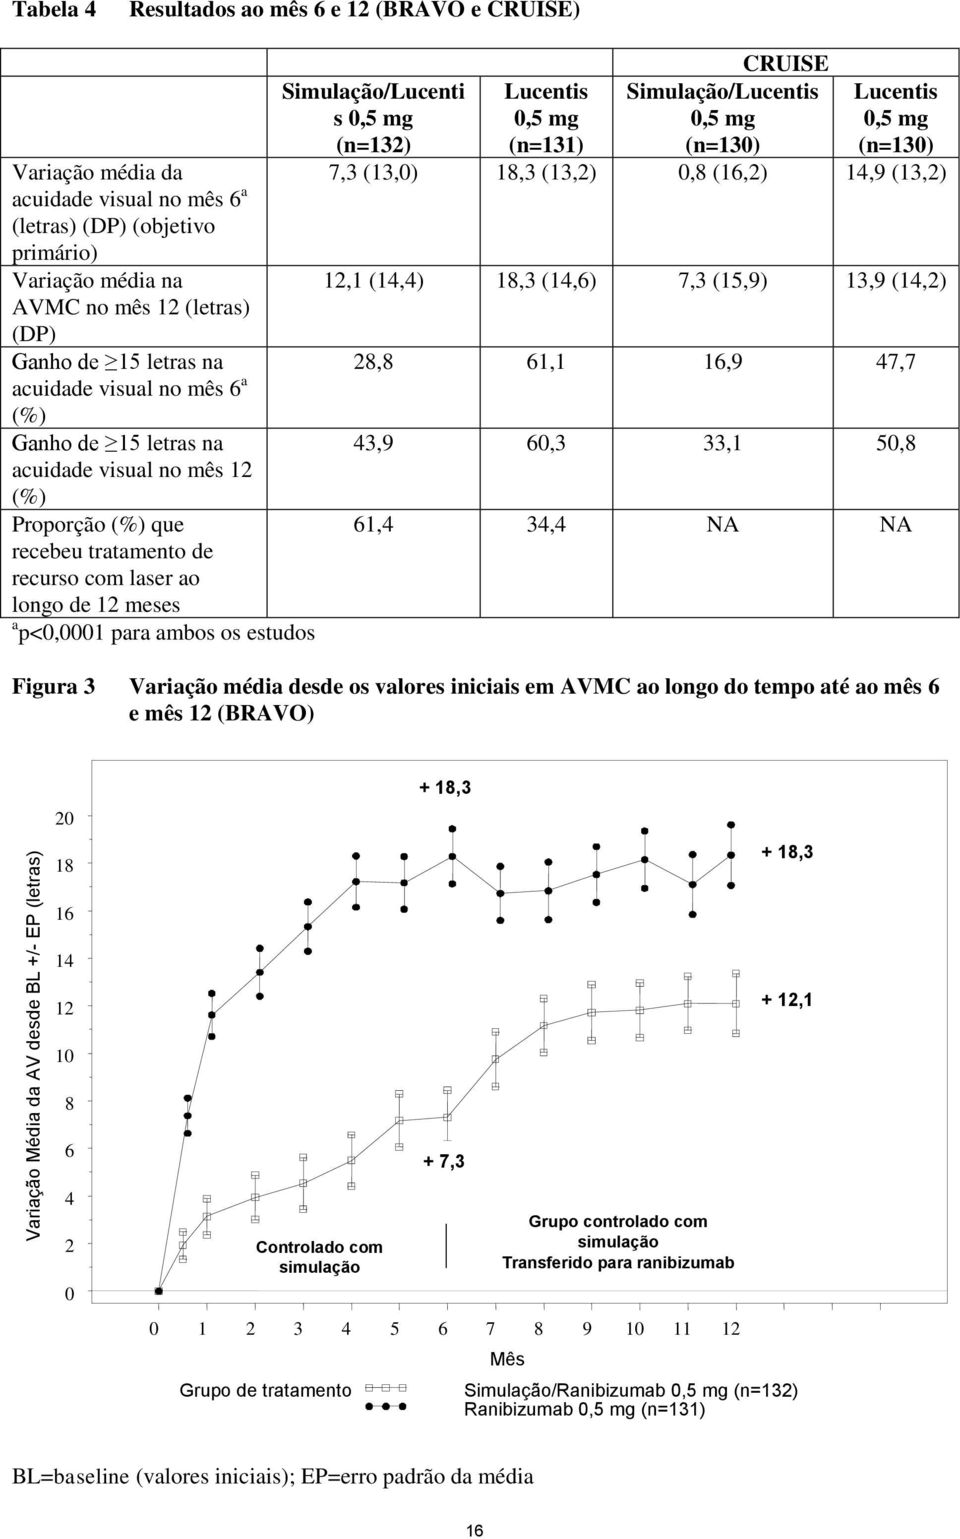 12 meses a p<0,0001 para ambos os estudos CRUISE Simulação/Lucenti s 0,5 mg (n=132) Lucentis 0,5 mg (n=131) Simulação/Lucentis 0,5 mg (n=130) Lucentis 0,5 mg (n=130) 7,3 (13,0) 18,3 (13,2) 0,8 (16,2)